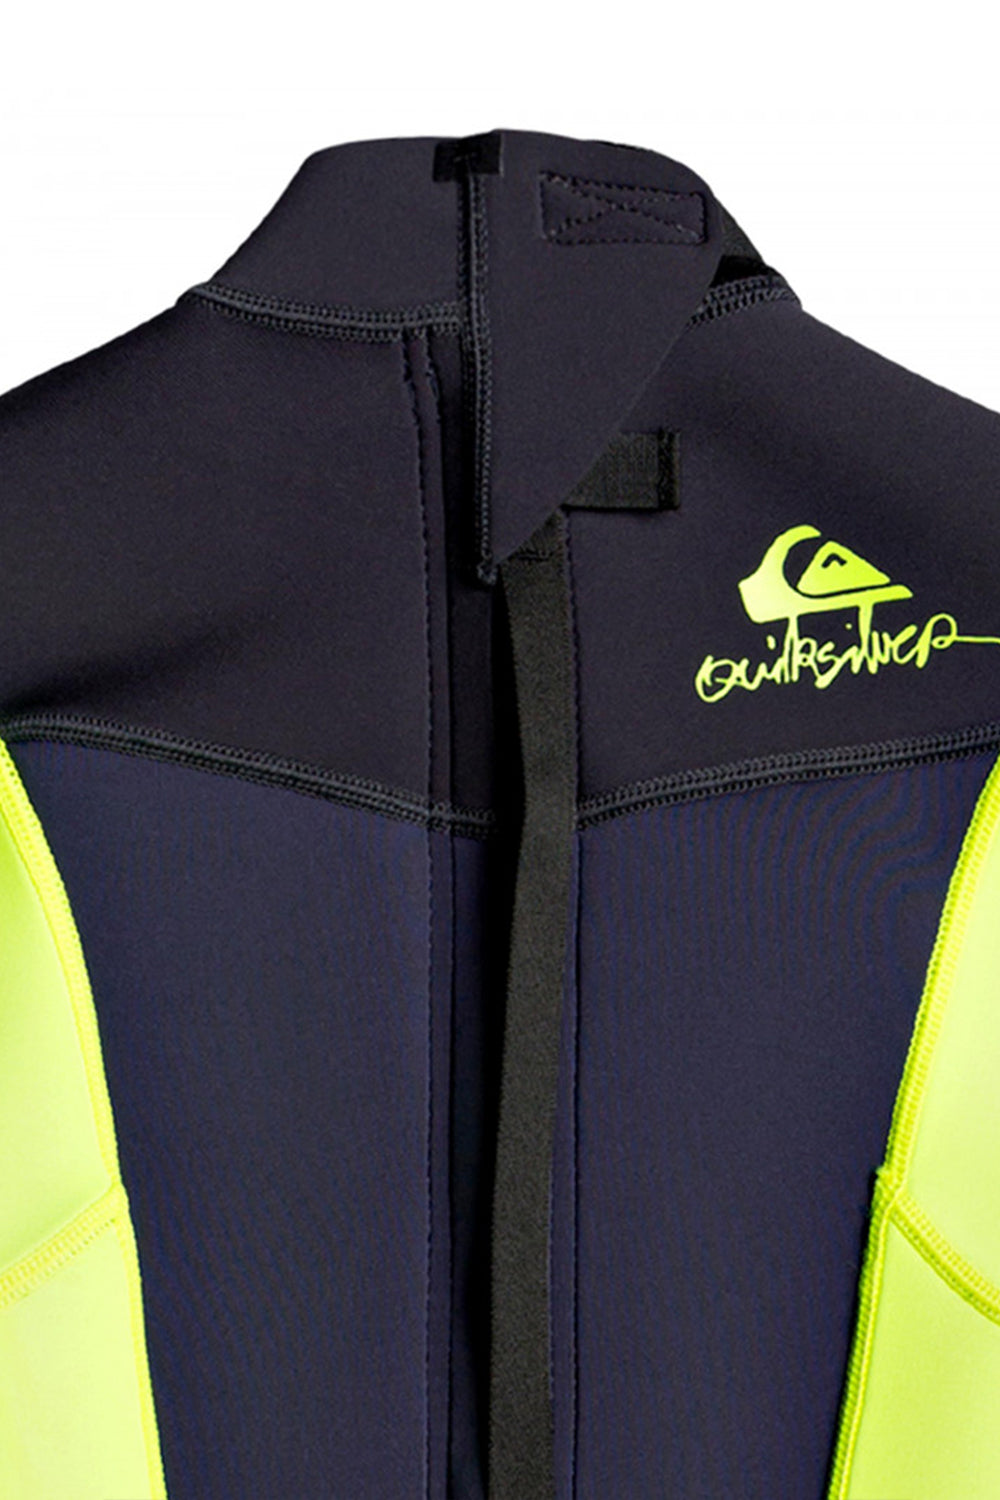 Quiksilver Boys 2-7 Syncro 2/2mm Short Sleeve Flatlock Springsuit Wetsuit